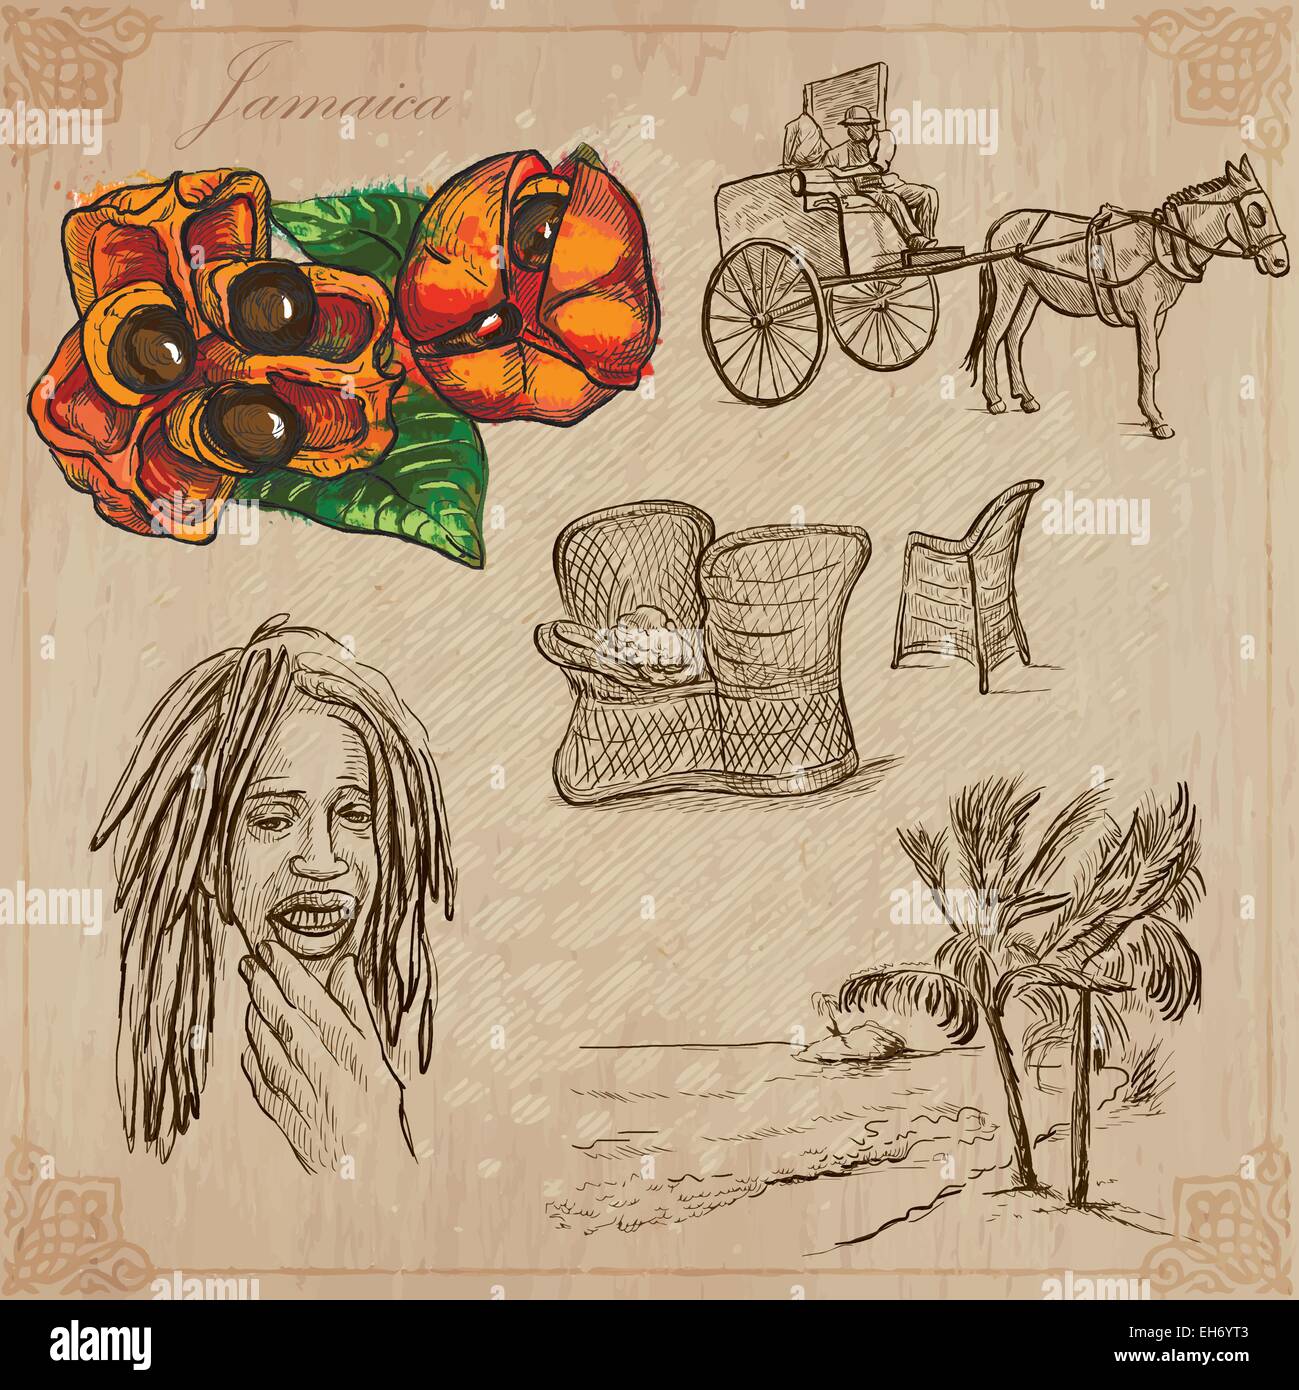 Reisen: Jamaika (Set Nr. 9) - Sammlung von einer Hand gezeichnet Vektor-Illustrationen. Jede Zeichnung bestehen aus drei Schichten von Linien, die Stock Vektor